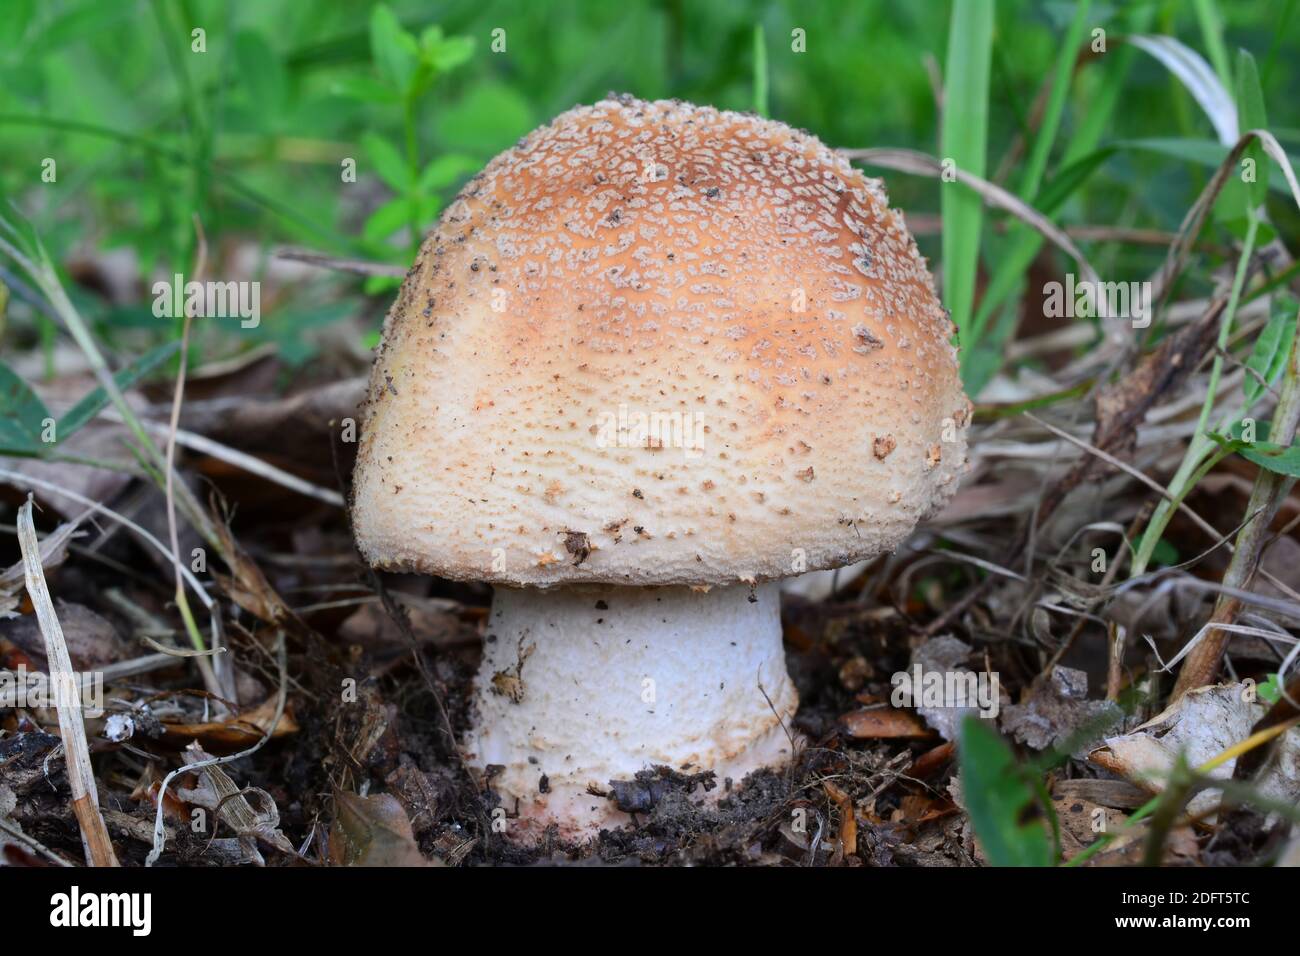 Ein einzelnes Exemplar von Amanita rubescens oder Blusher Pilzen in natürlichem Lebensraum, Nahaufnahme, horizontale Ausrichtung Stockfoto